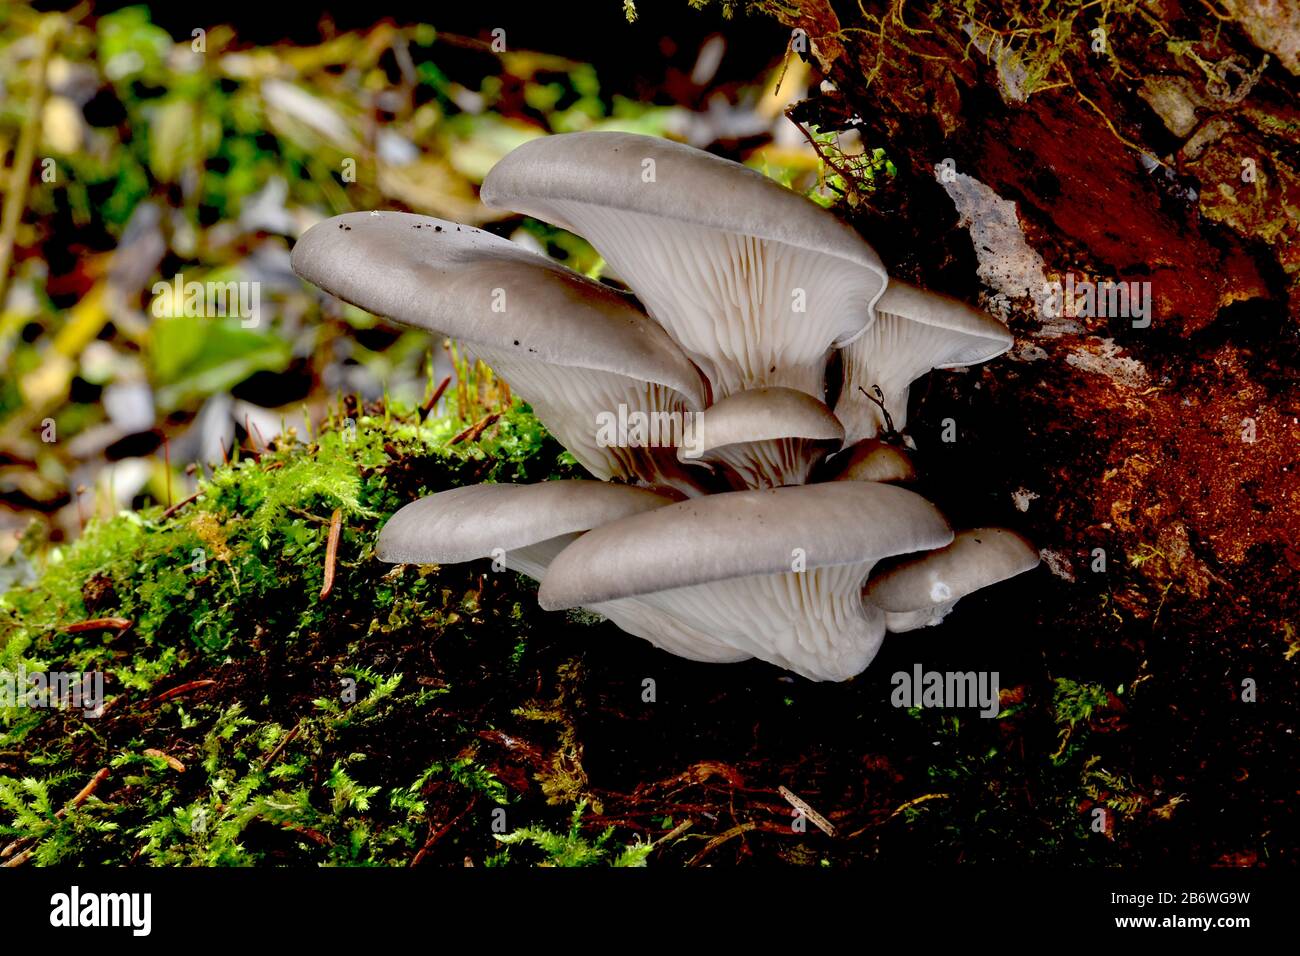 Hongos Oyster (Pleurotus ostreatus). Fructificación de cuerpos en tronco de árbol muerto. Alemania Foto de stock